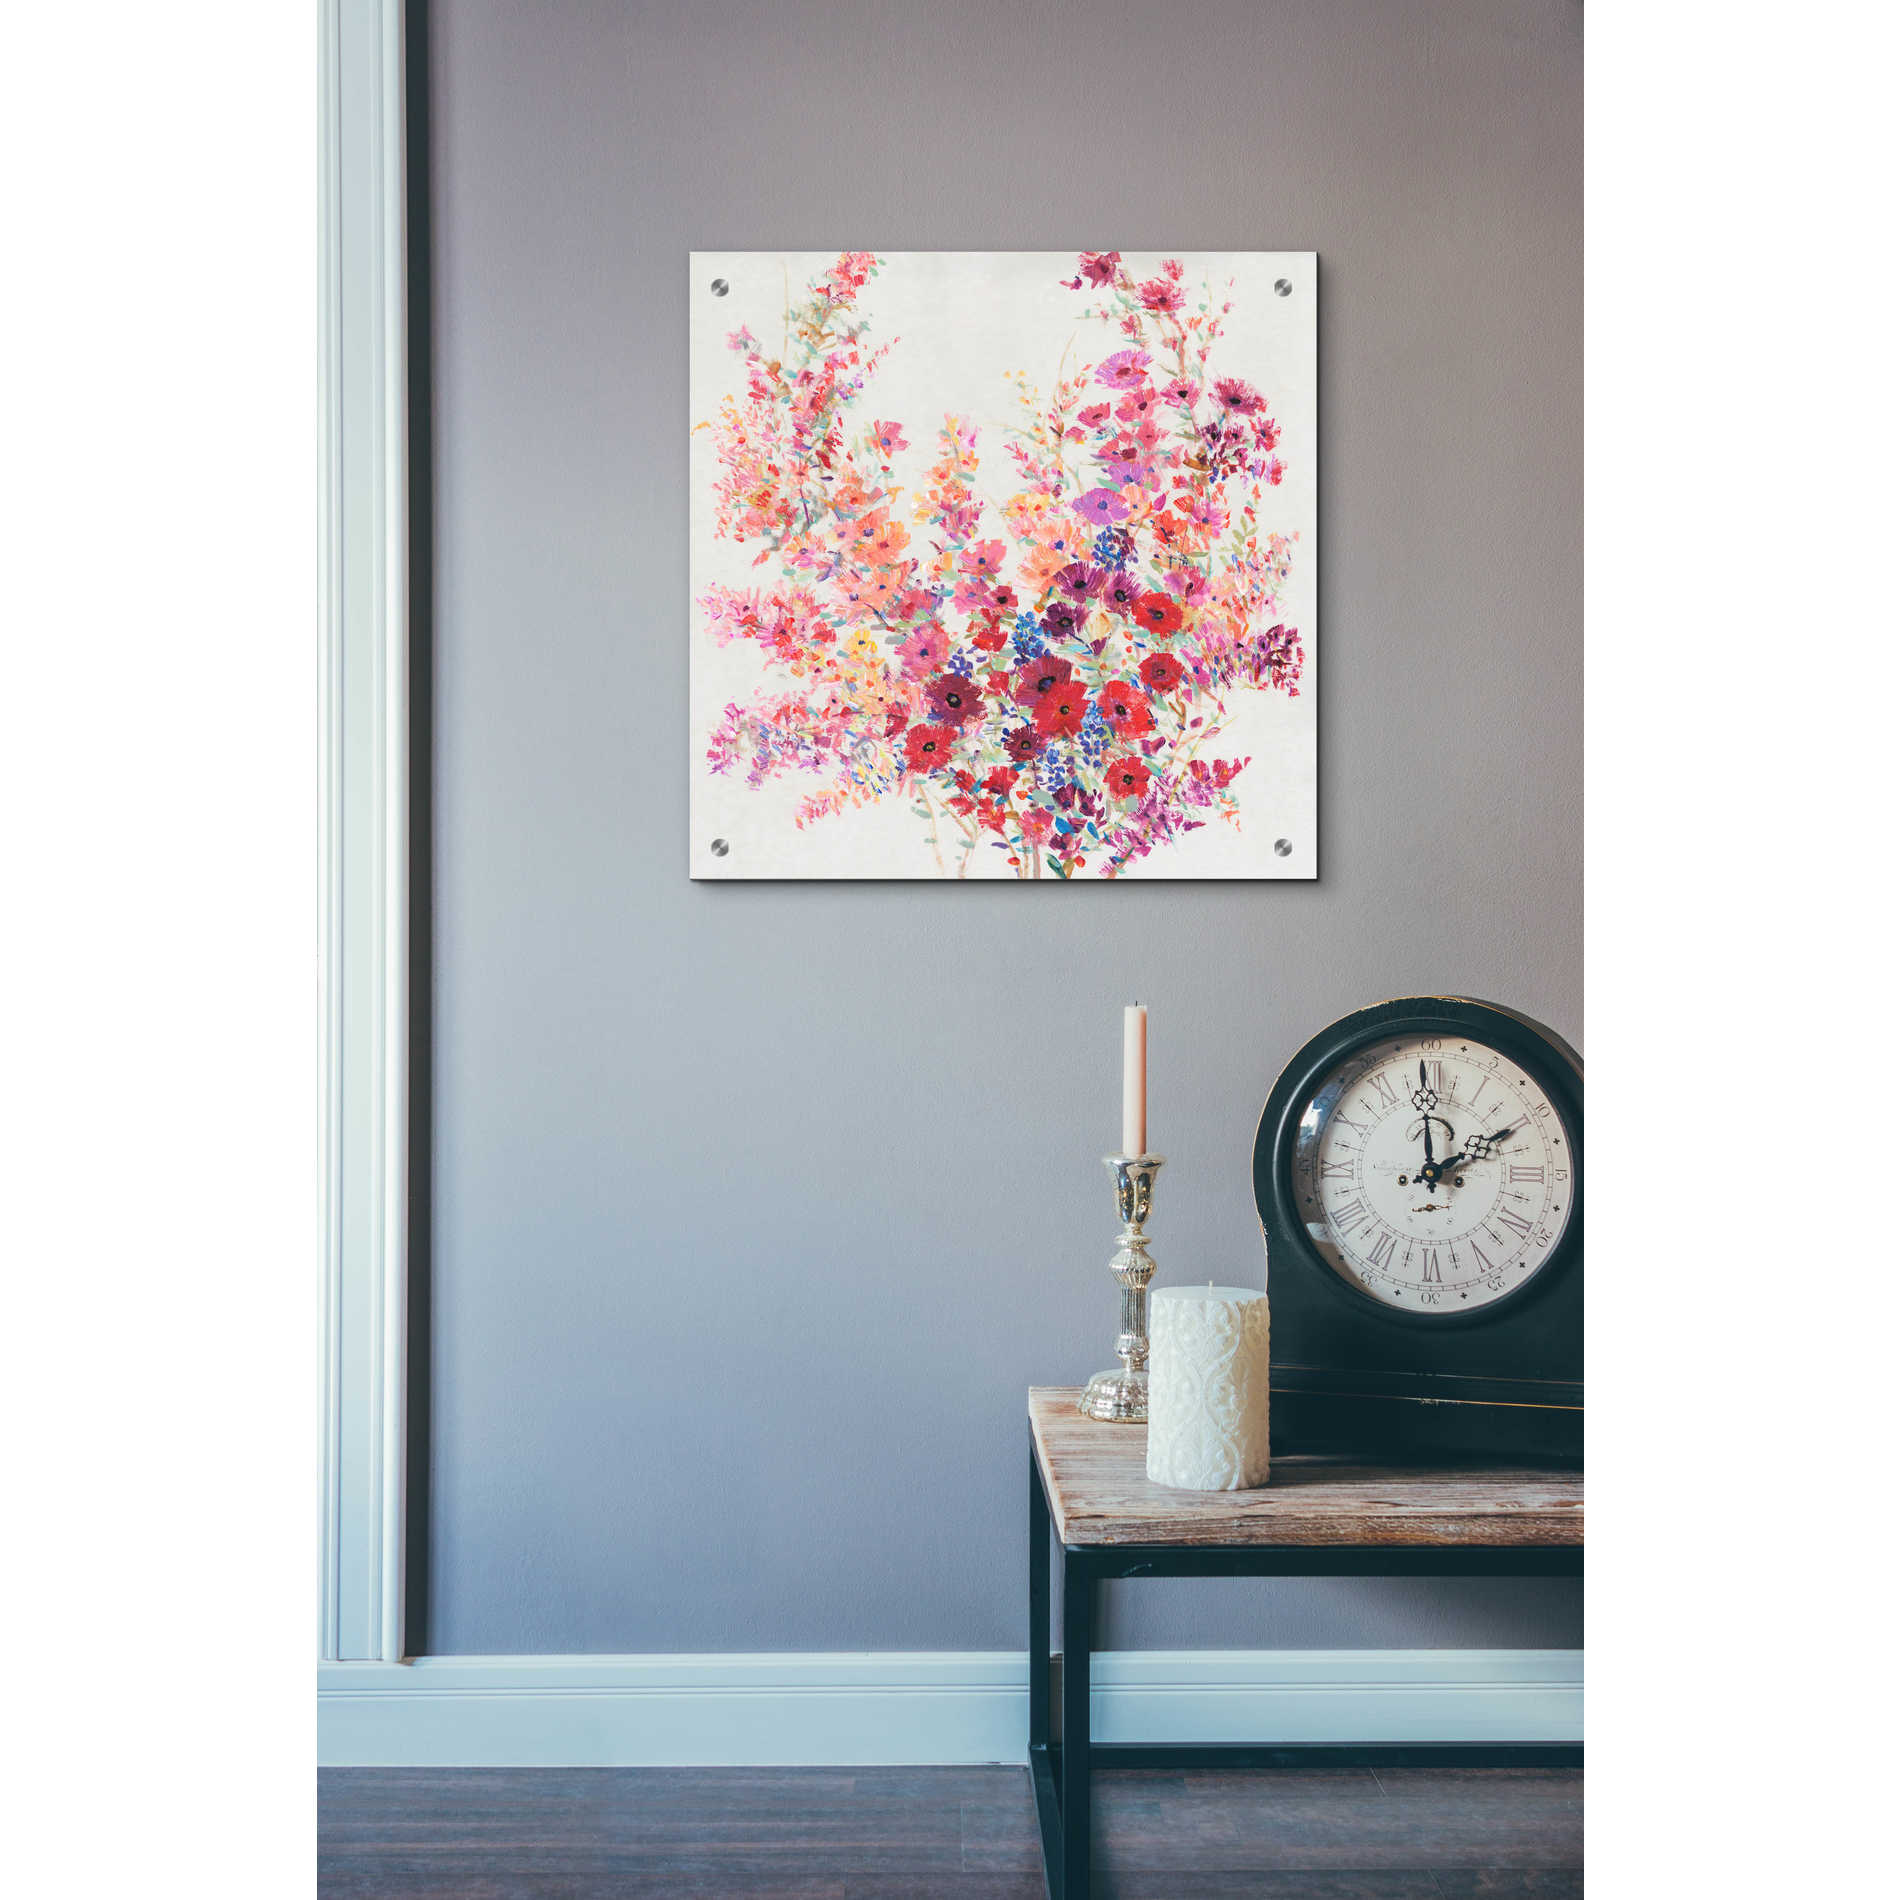 Epic Art 'Flowers on a Vine II' by Tim O'Toole, Acrylic Glass Wall Art,24x24